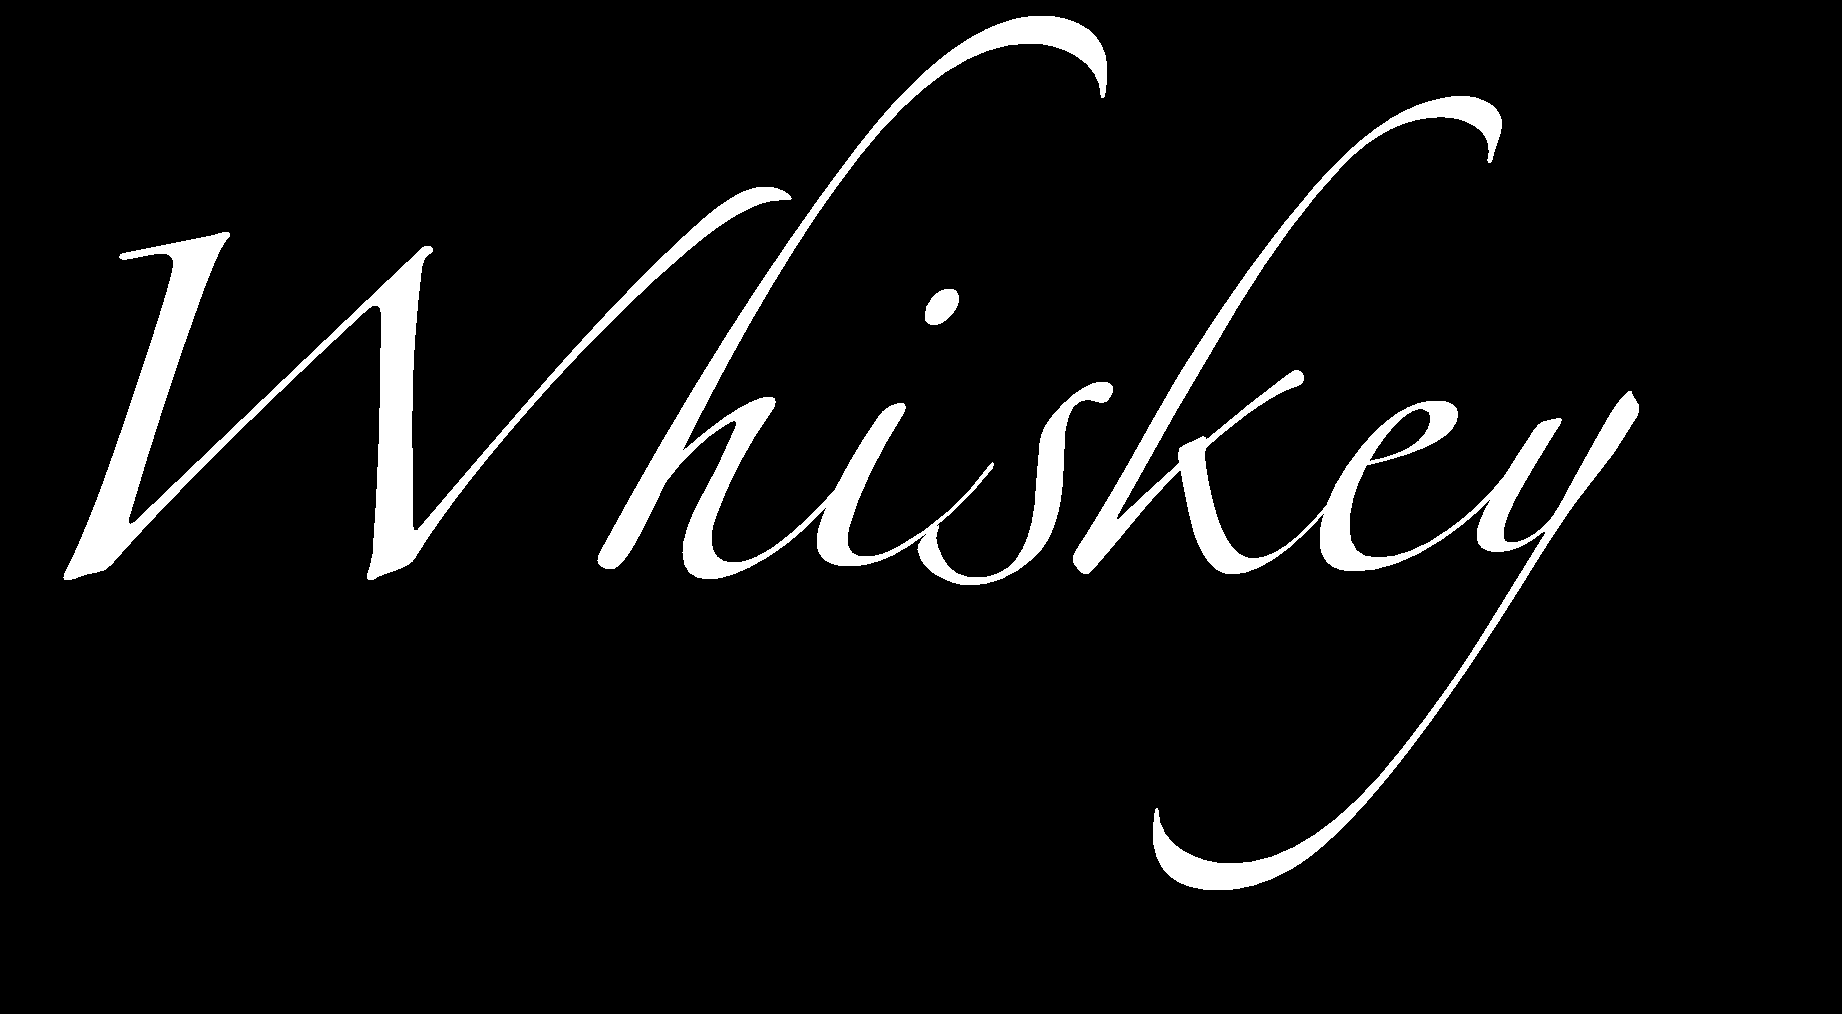 Il whisky (o whiskey) è una bevanda alcolica, ottenuta dalla distillazione di vari cereali, (orzo, grano, segale) invecchiata in botti di legno (generalmente di quercia).